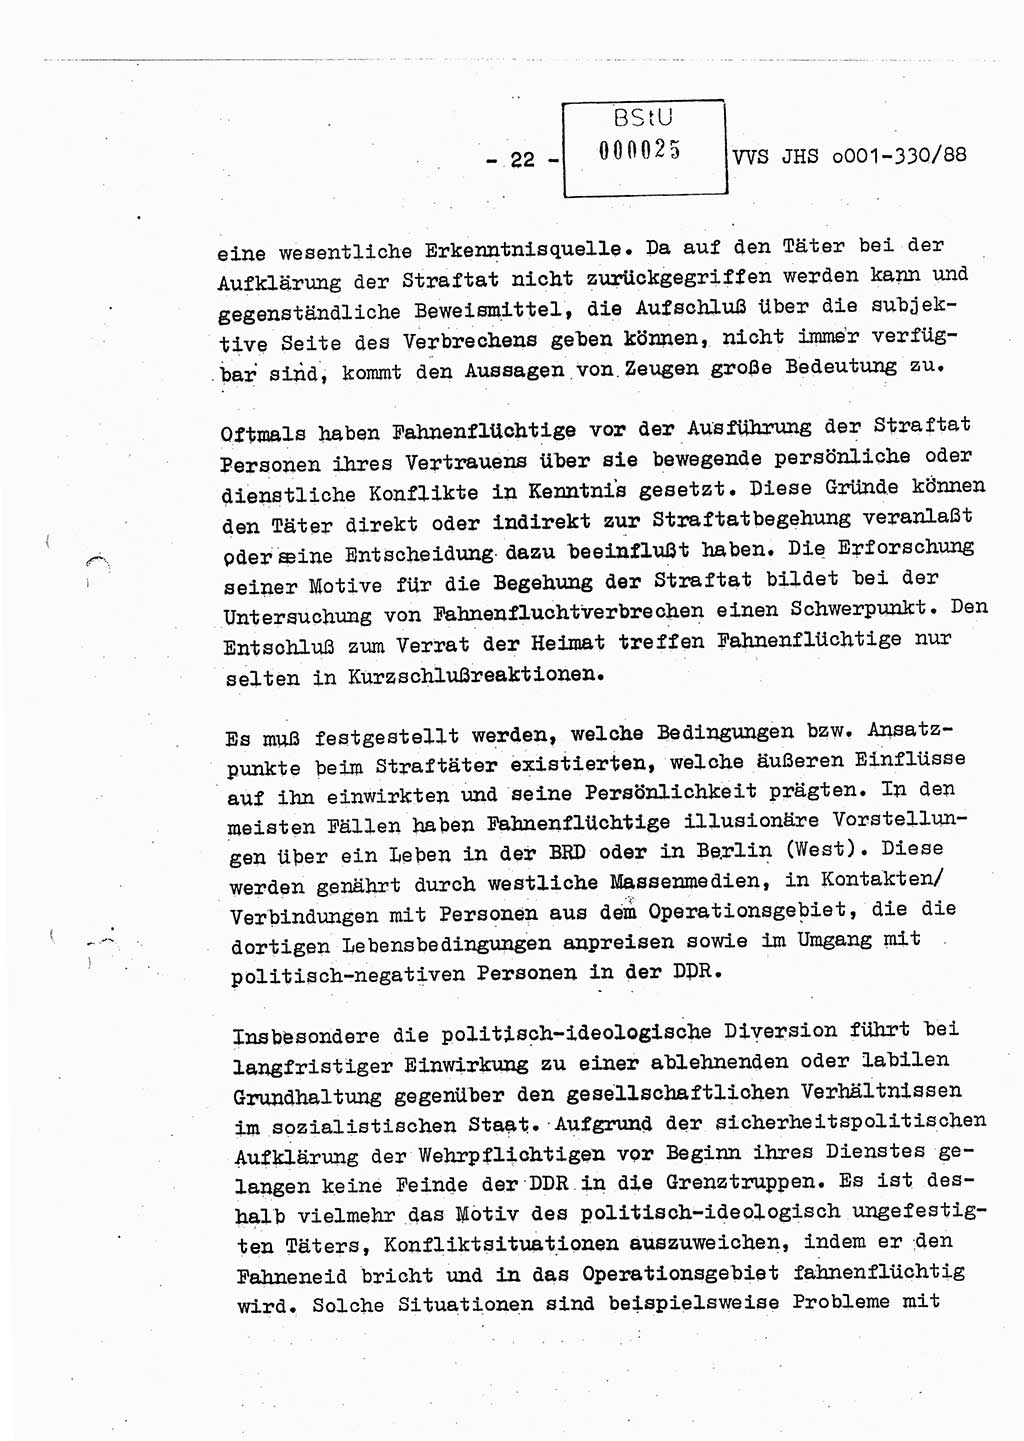 Diplomarbeit Offiziersschüler Thomas Mühle (HA Ⅸ/6), Ministerium für Staatssicherheit (MfS) [Deutsche Demokratische Republik (DDR)], Juristische Hochschule (JHS), Vertrauliche Verschlußsache (VVS) o001-330/88, Potsdam 1988, Seite 22 (Dipl.-Arb. MfS DDR JHS VVS o001-330/88 1988, S. 22)